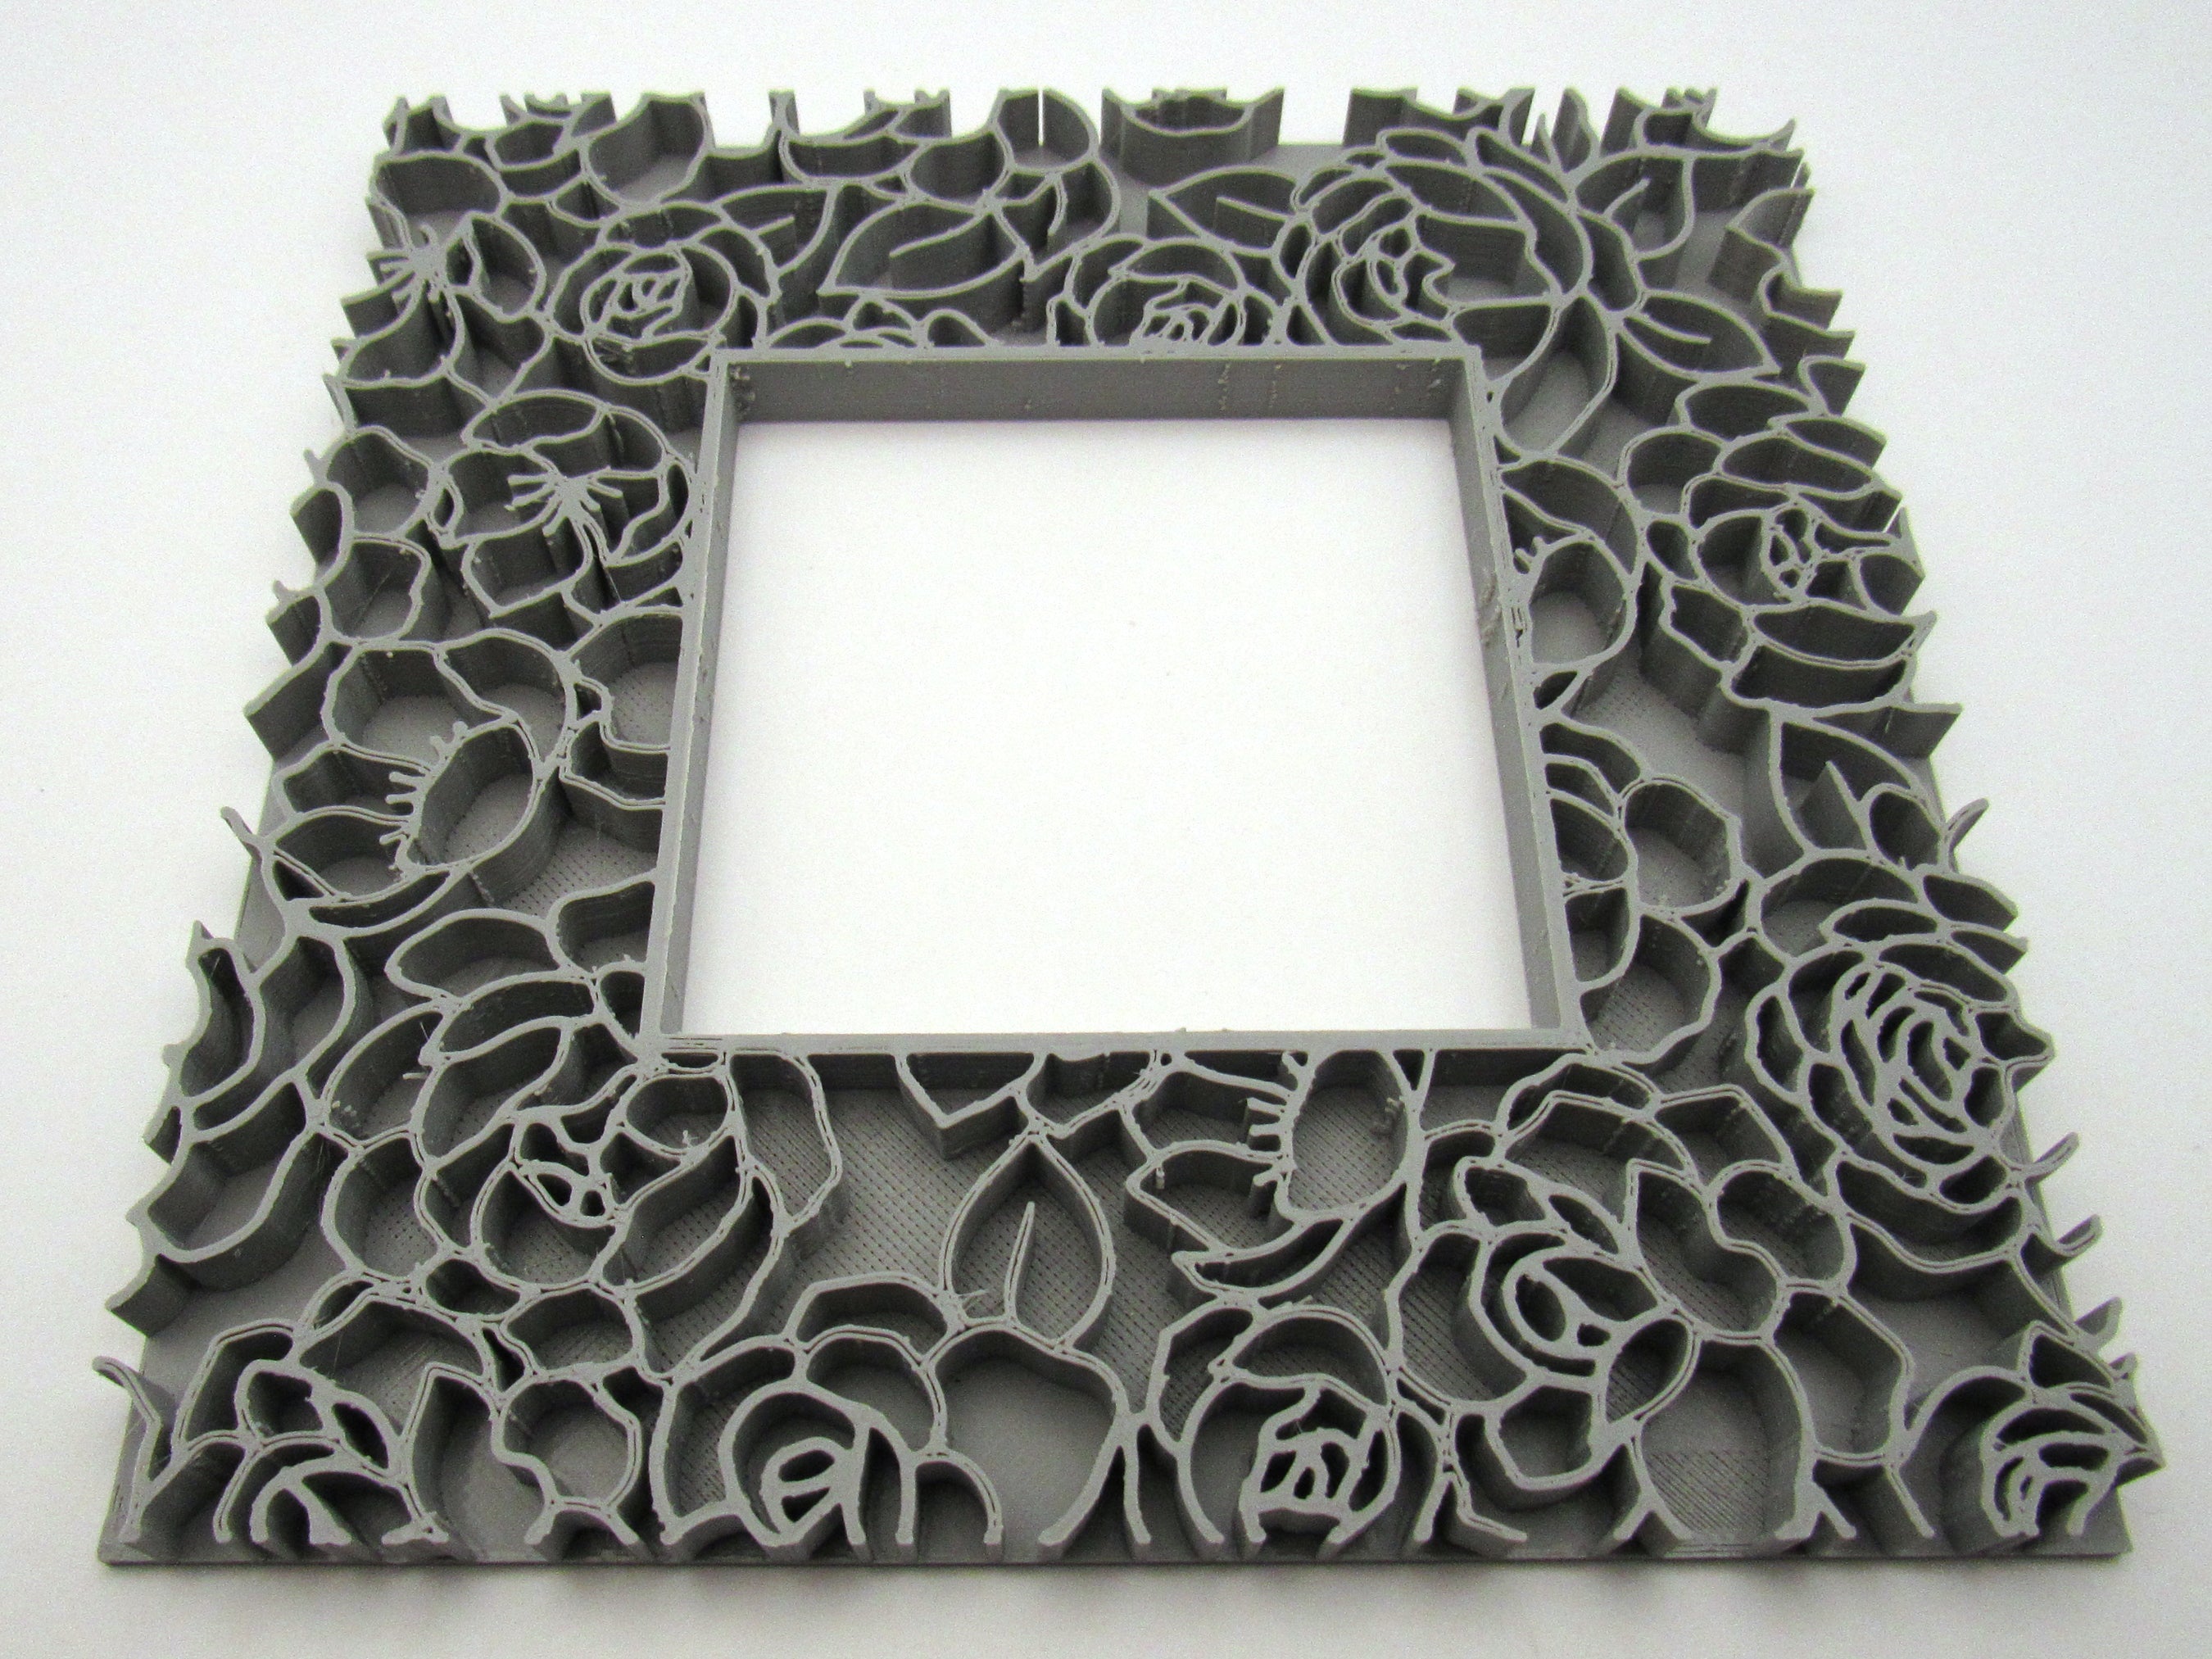 Rose Blooms Background or Frame Stamp